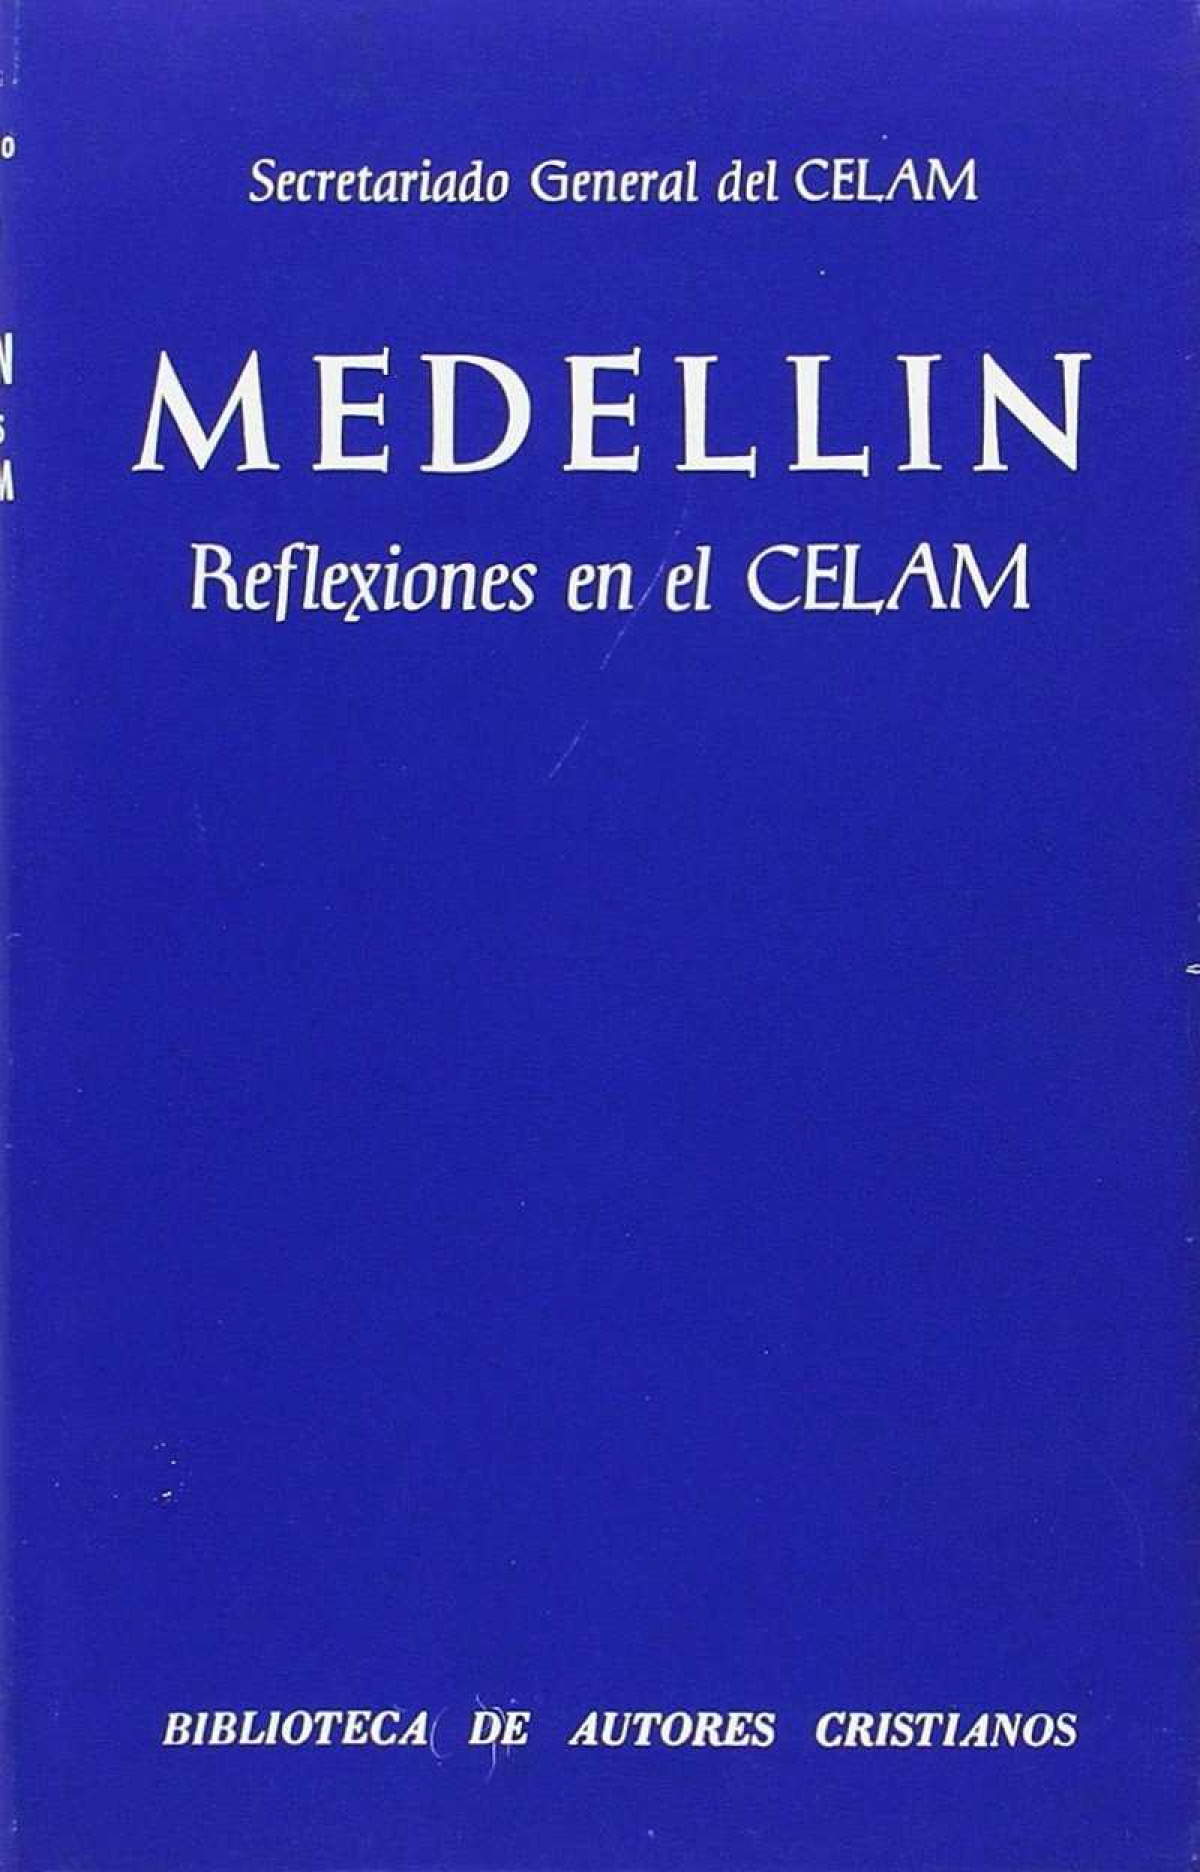 Medellín.Reflexiones en el CELAM - Secretariado del CELAM (Consejo Episcopal Latinoamericano)